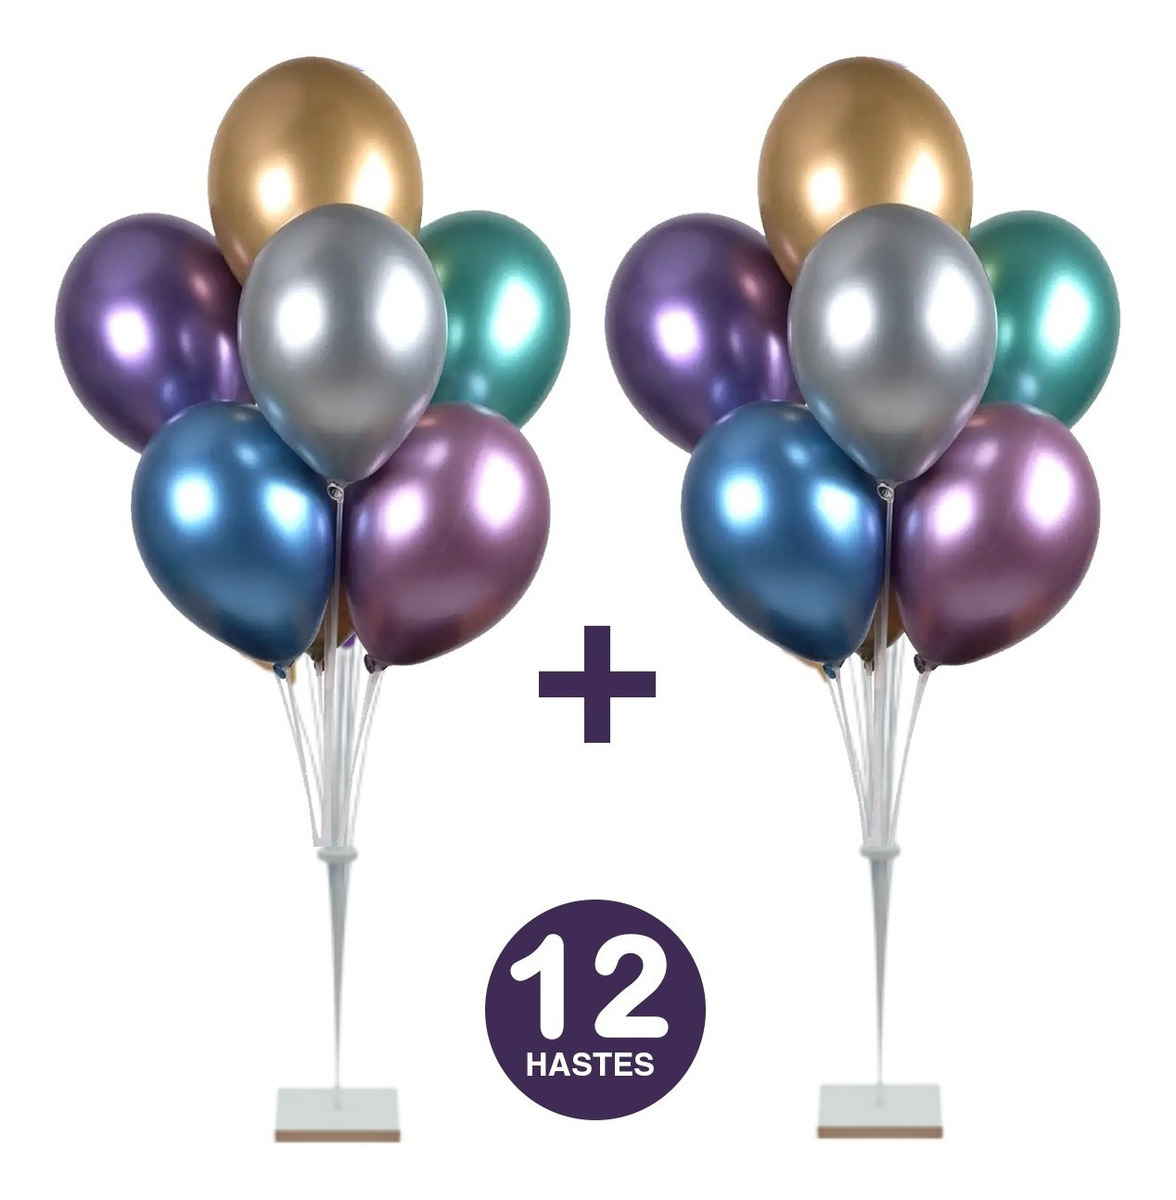 Kit 02 Suportes de Balão Bexiga Bolas de 12 Hastes C/ 1,20cm Grande de Chão Para Festas Decoração Aniversário